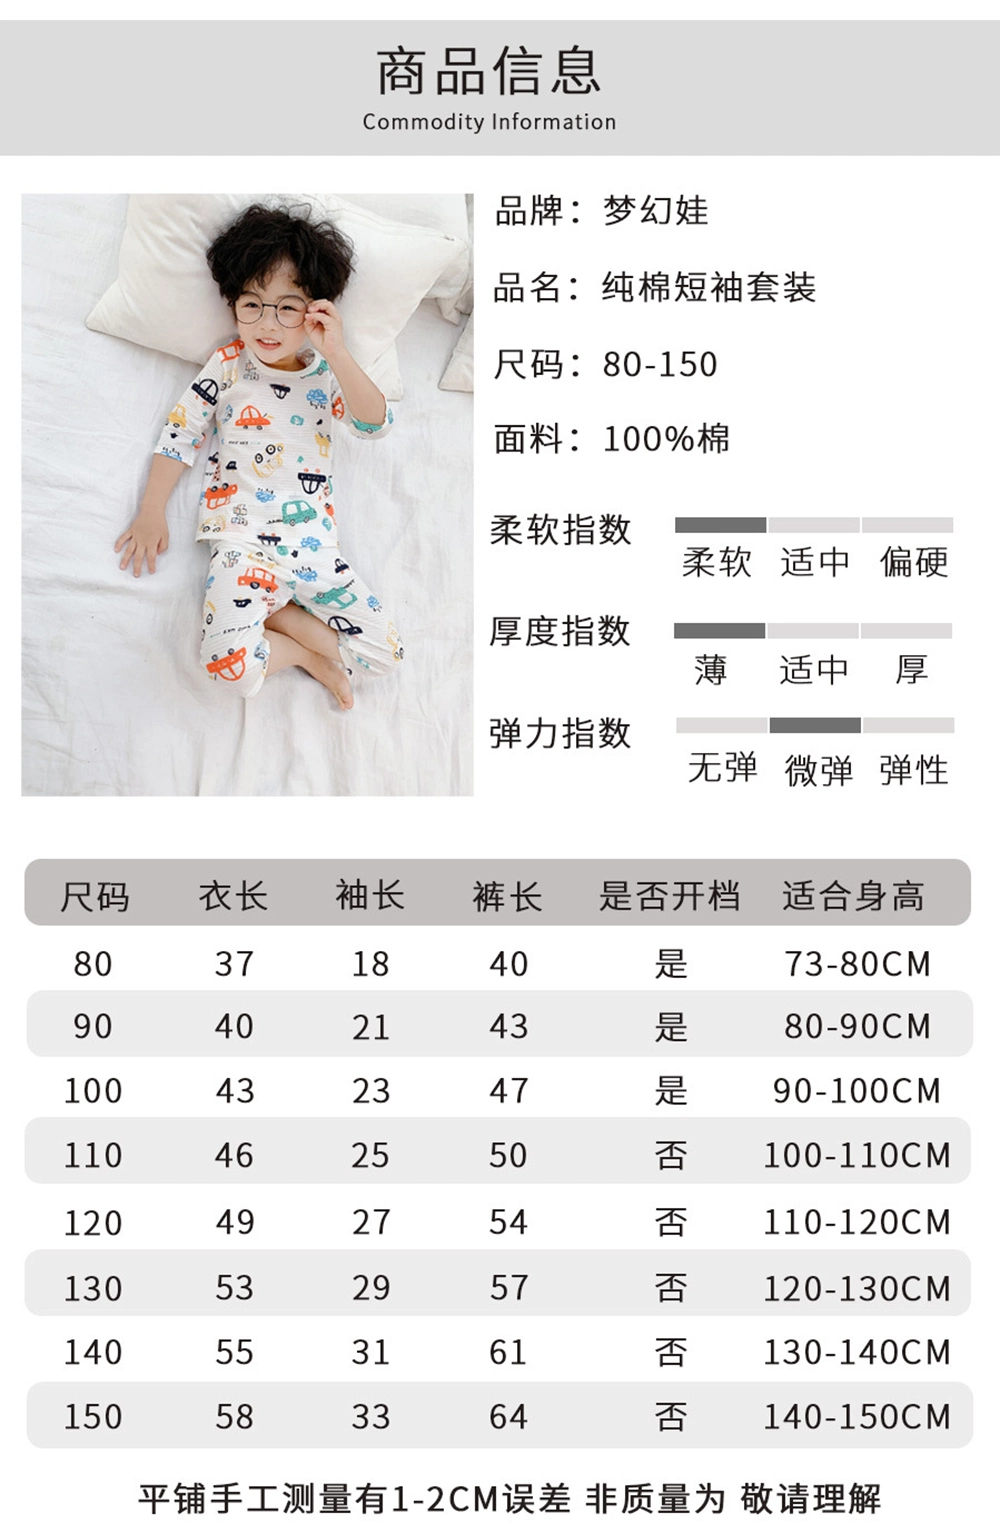 2020 New Design Kids Pajamas with 100% Cotton